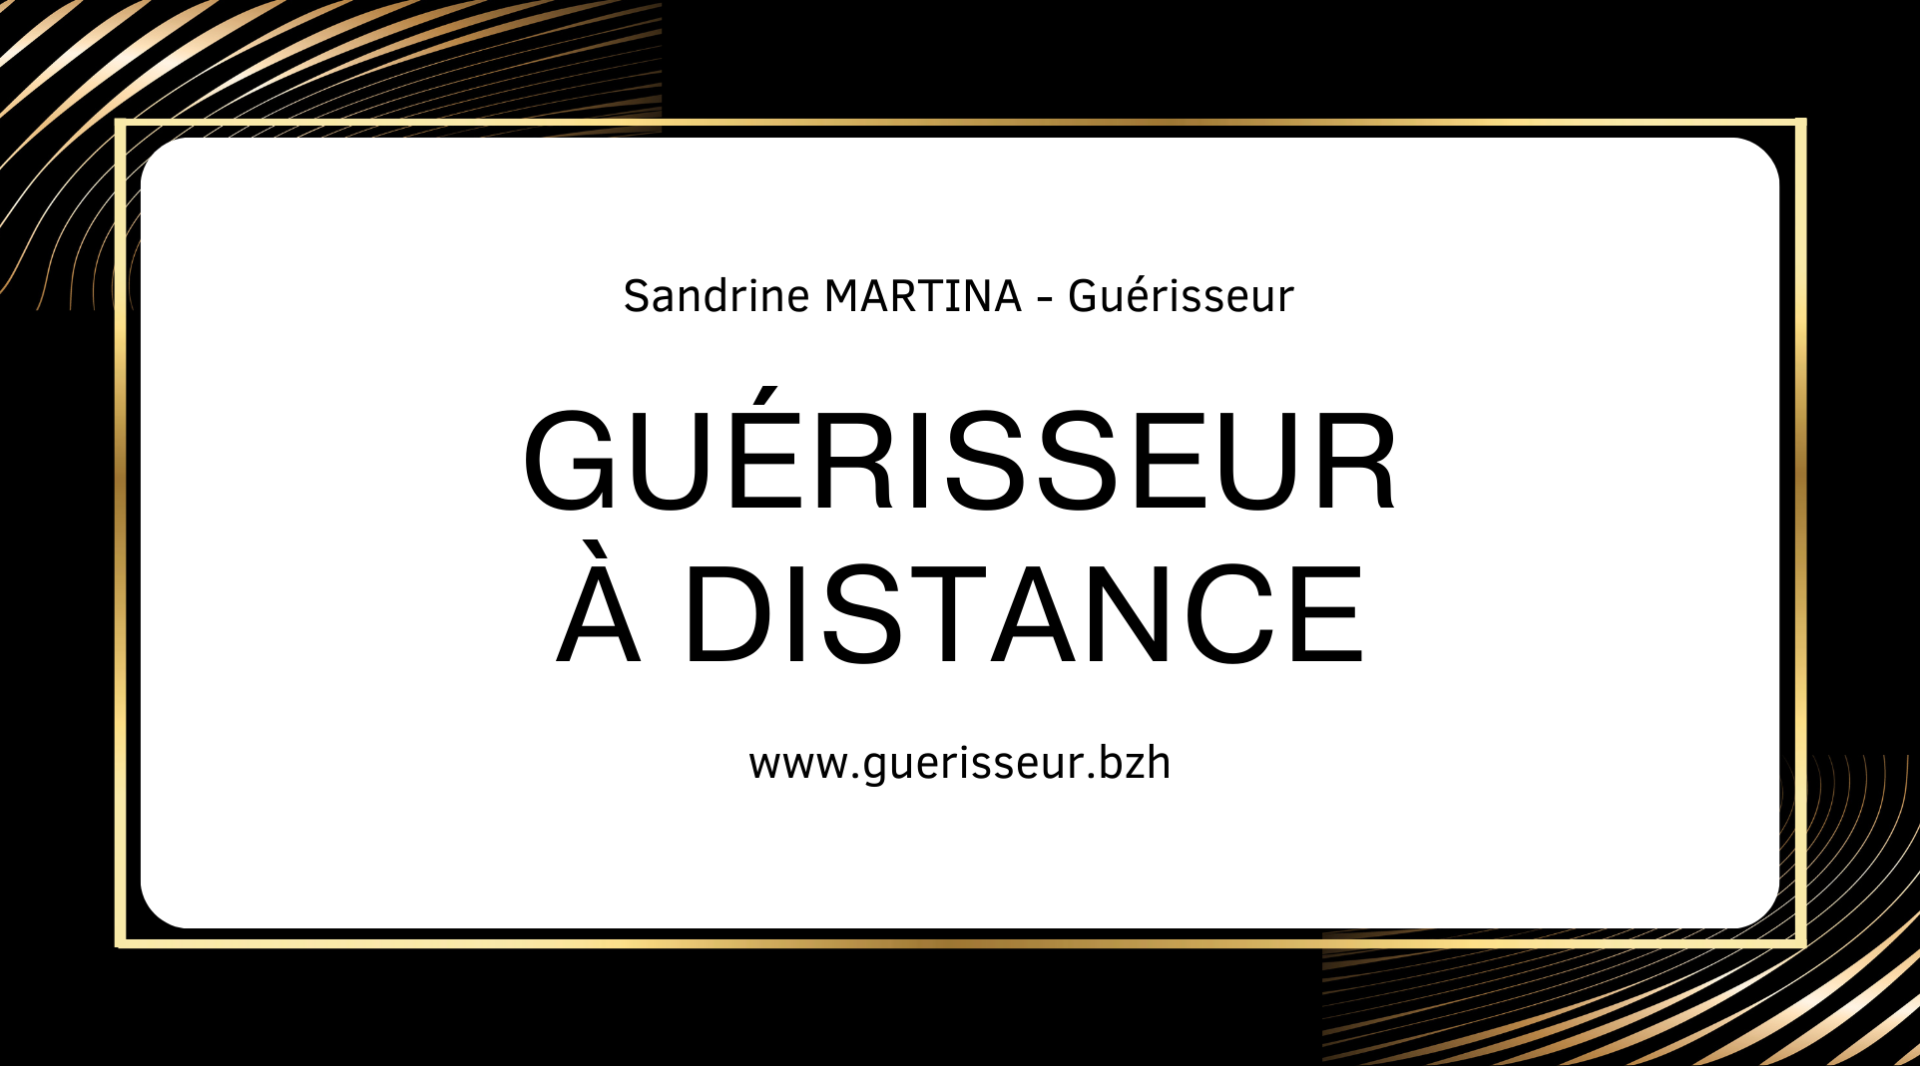 Guerisseur a distance magnetiseur a distance sandrine martina 01 ph 1